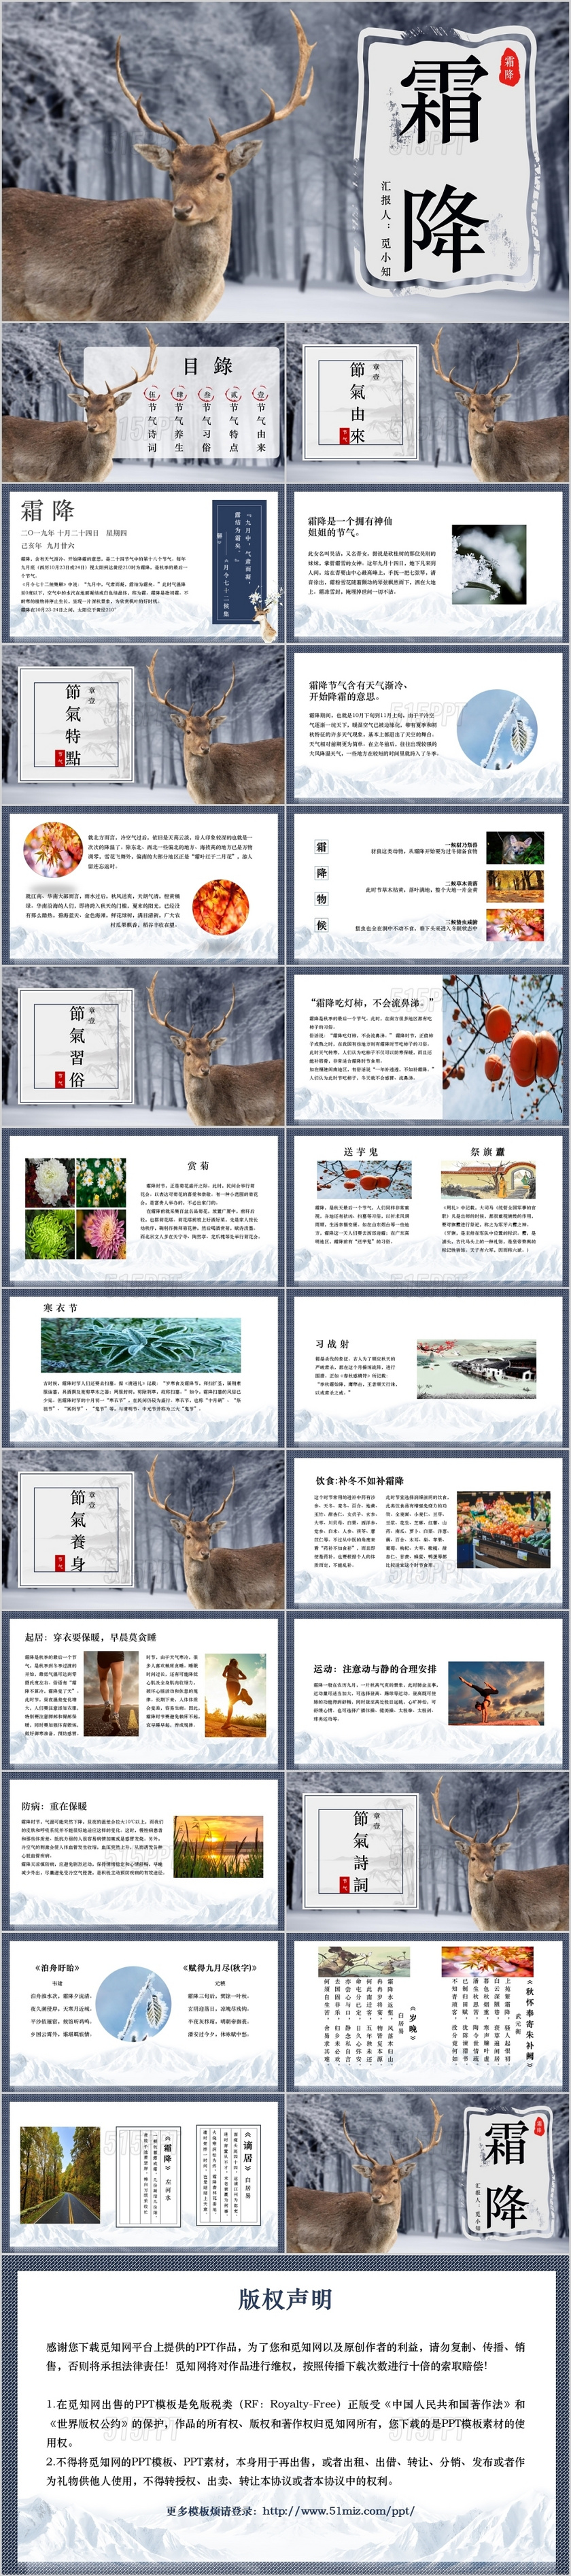 中国传统节日二十四节气节气PPT模板